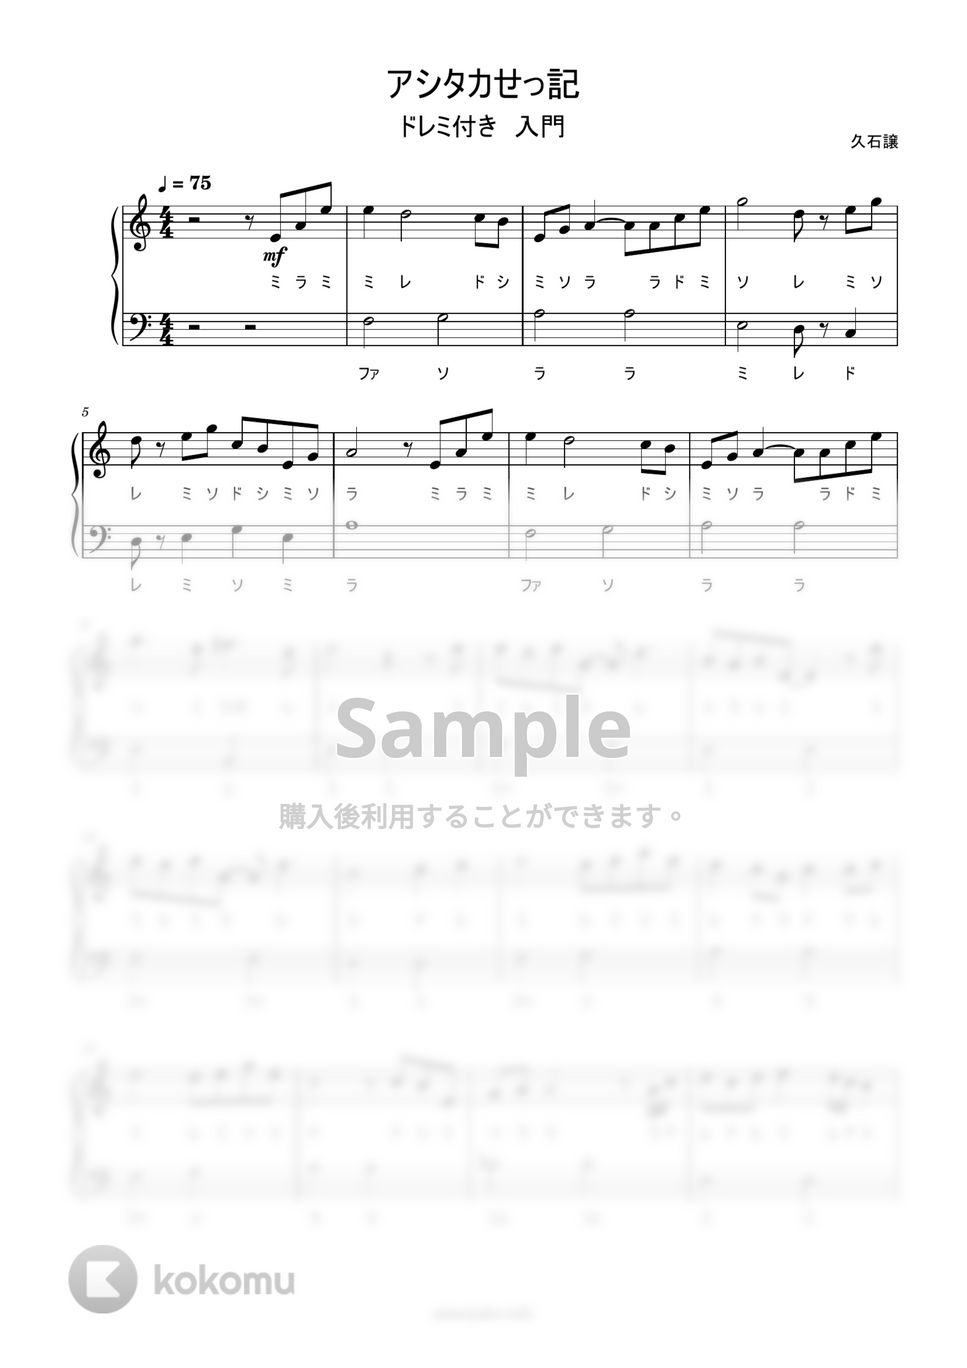 久石譲 - アシタカせっ記 (ドレミ付き簡単楽譜) by ピアノ塾